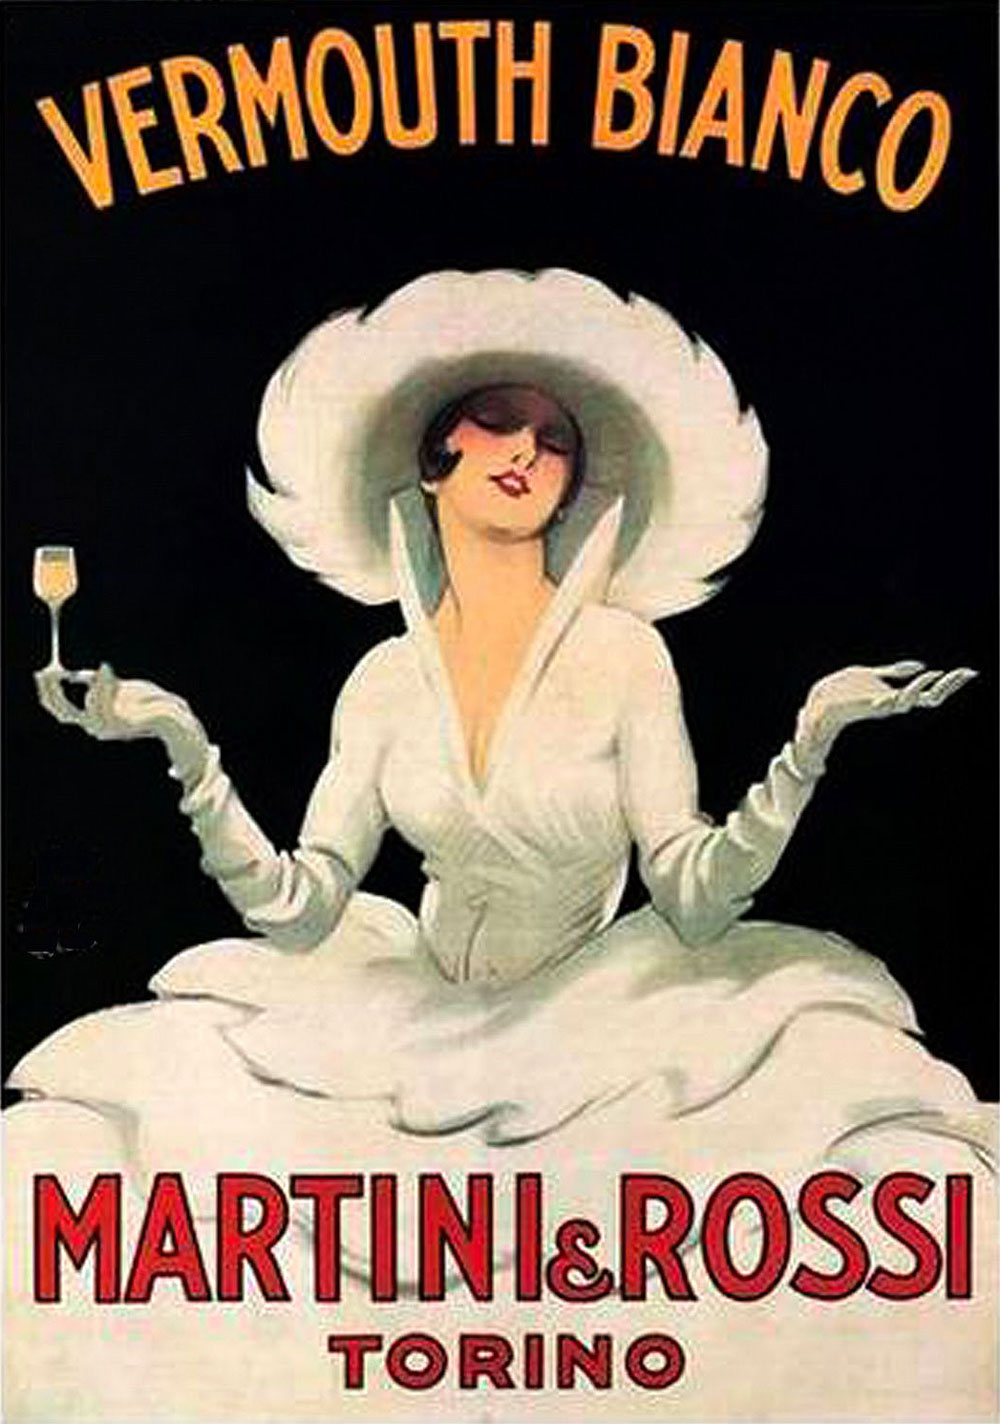 Martini & Rossi vermouth ad.